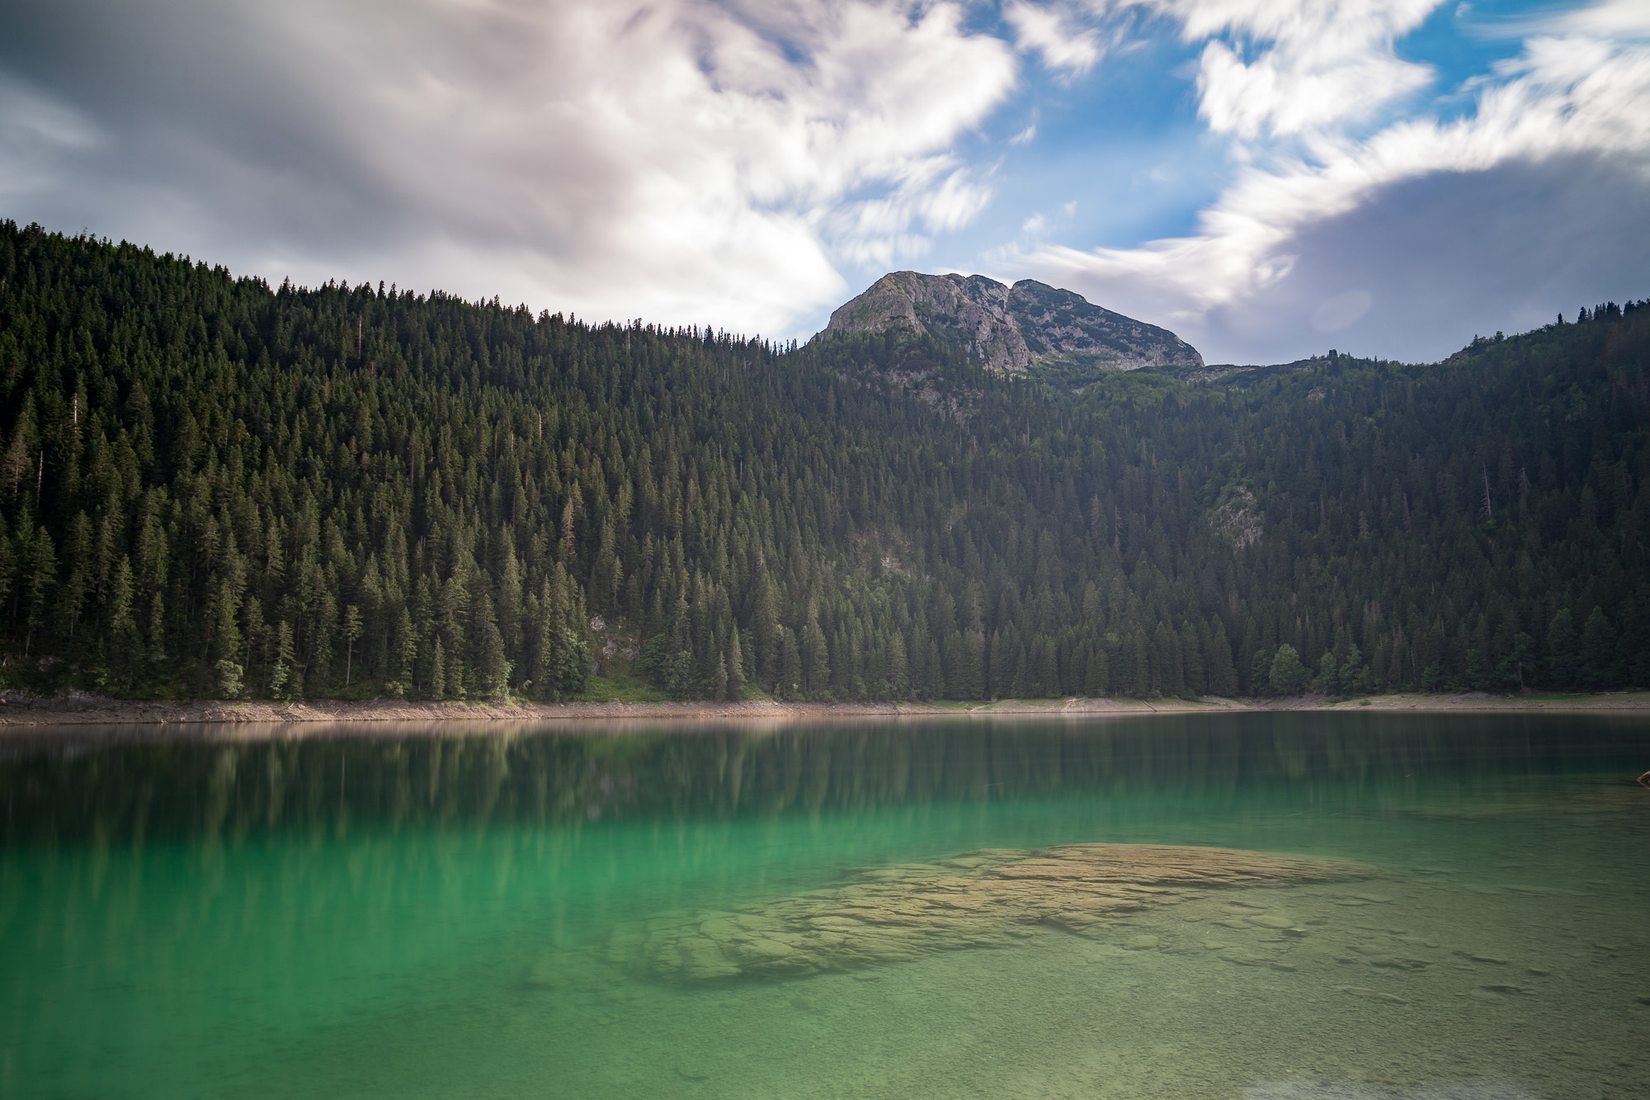 Црно-езеро Черногория. Ливеровичи озеро Черногория. Змеиное озеро Черногория. Большая и малая шишка озеро Черногория.